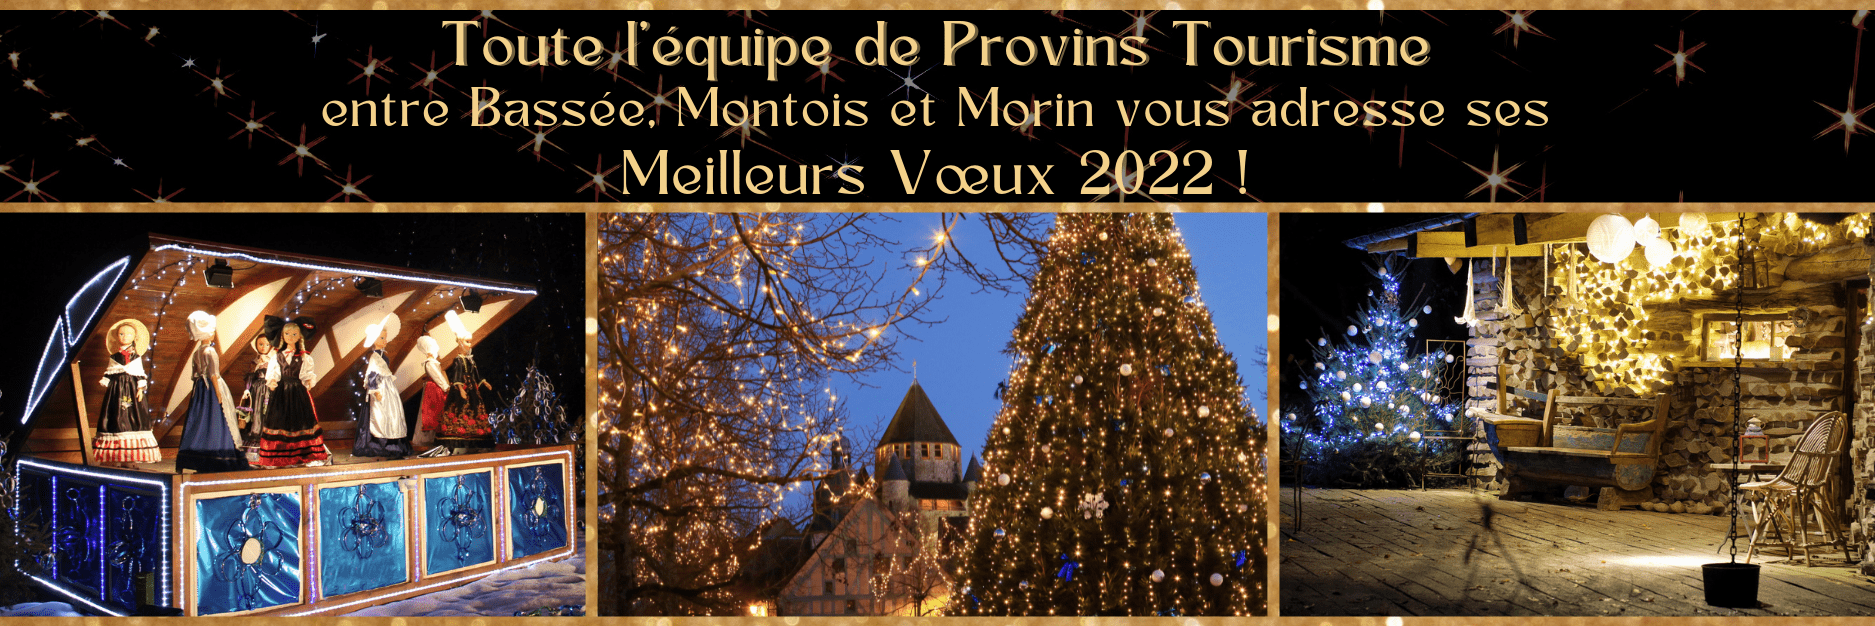 Toute l'équipe de Provins Tourisme, entre Bassée, Montois et Morin vous adresse ses meilleurs voeux 2022 !